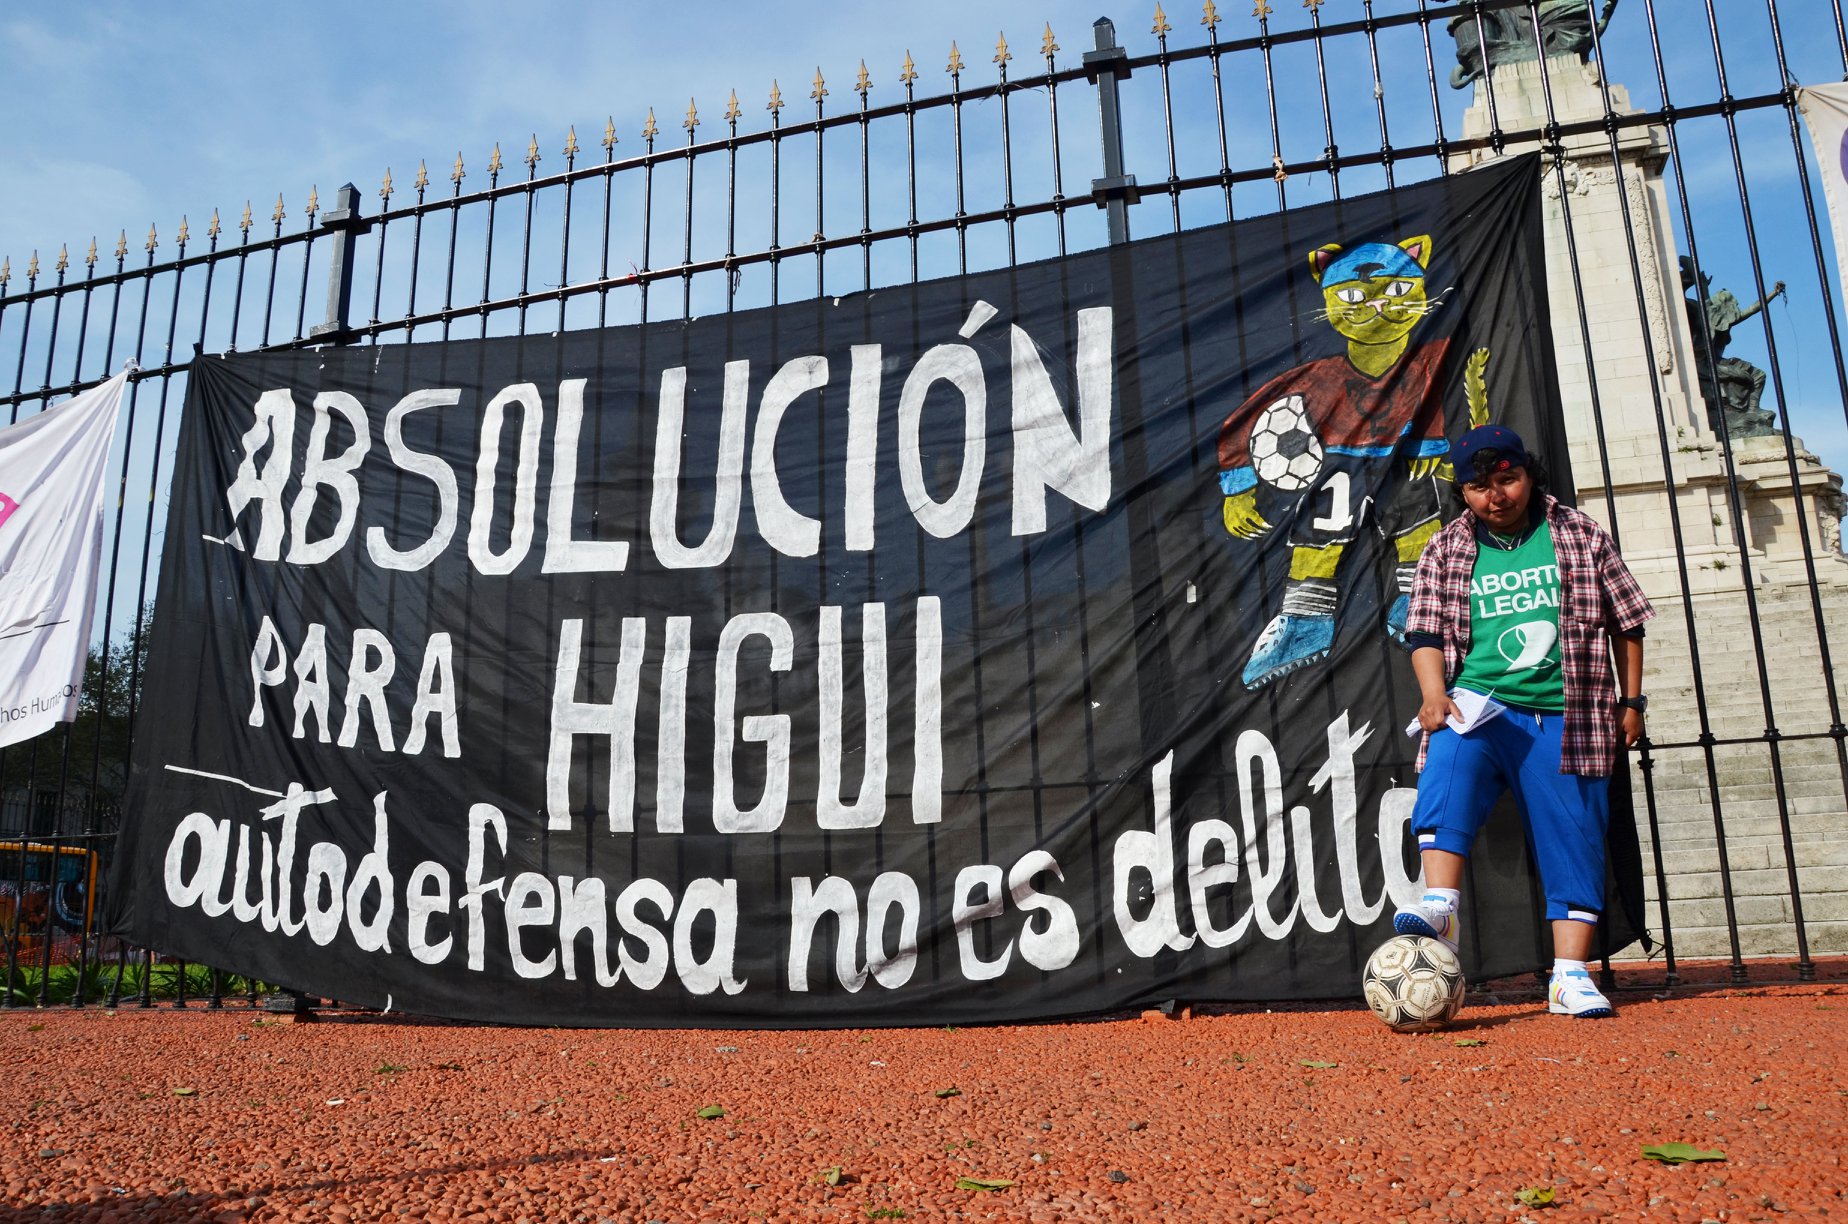 El 15 de marzo comenzará el juicio contra Higui y el pedido de absolución es una de las consignas por el Día de la Visibilidad Lésbica. (Foto Marcha.org).-